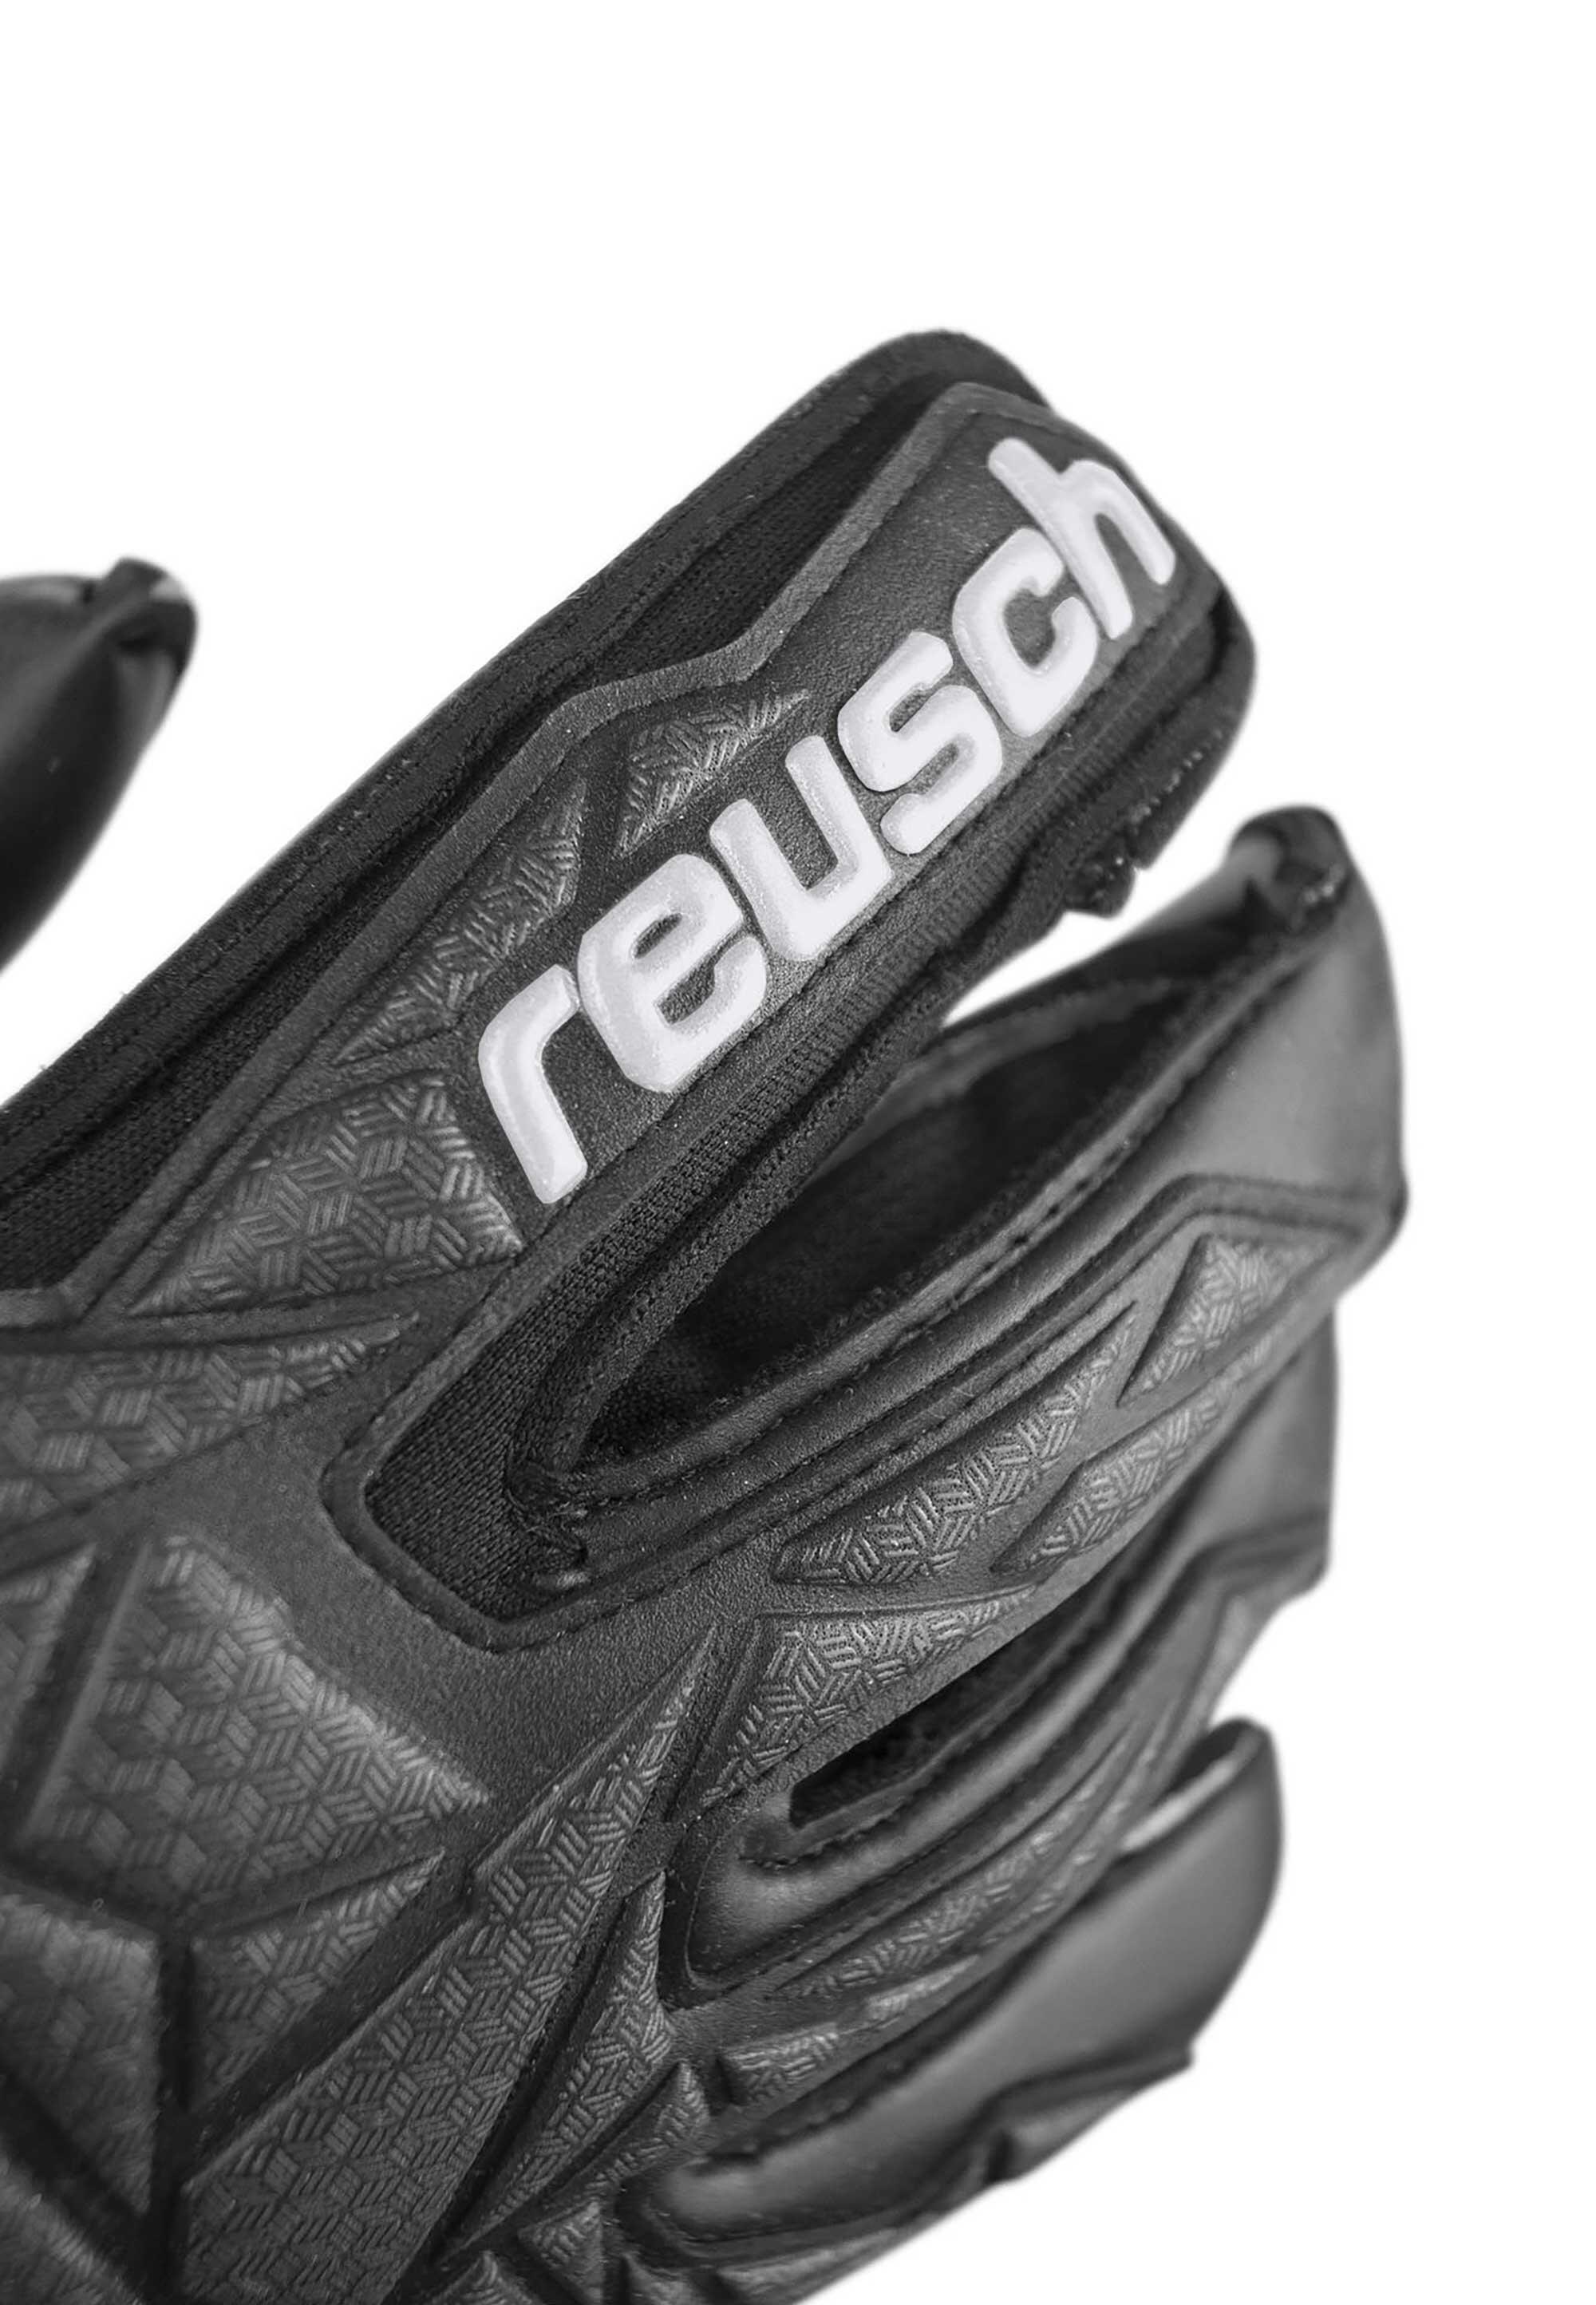 Reusch Attrakt Infinity Resistor AdaptiveFlex Goalkeeper Gloves 5/7